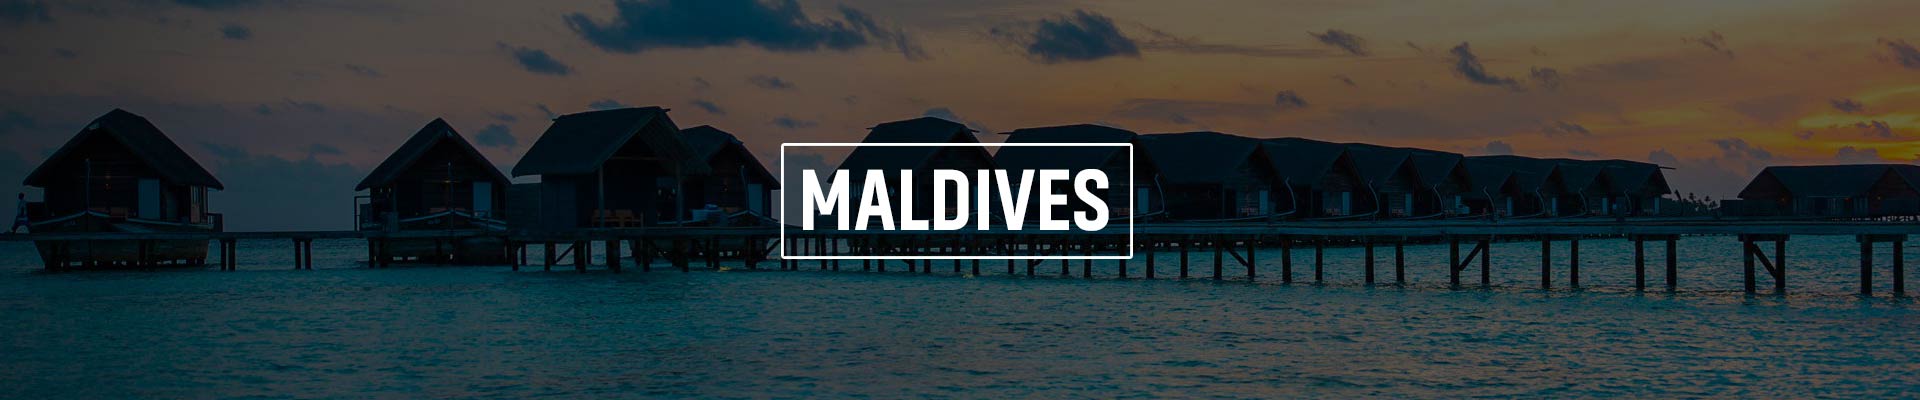 Maldives Exhibition & Conference Services Pvt Ltd (MECS)